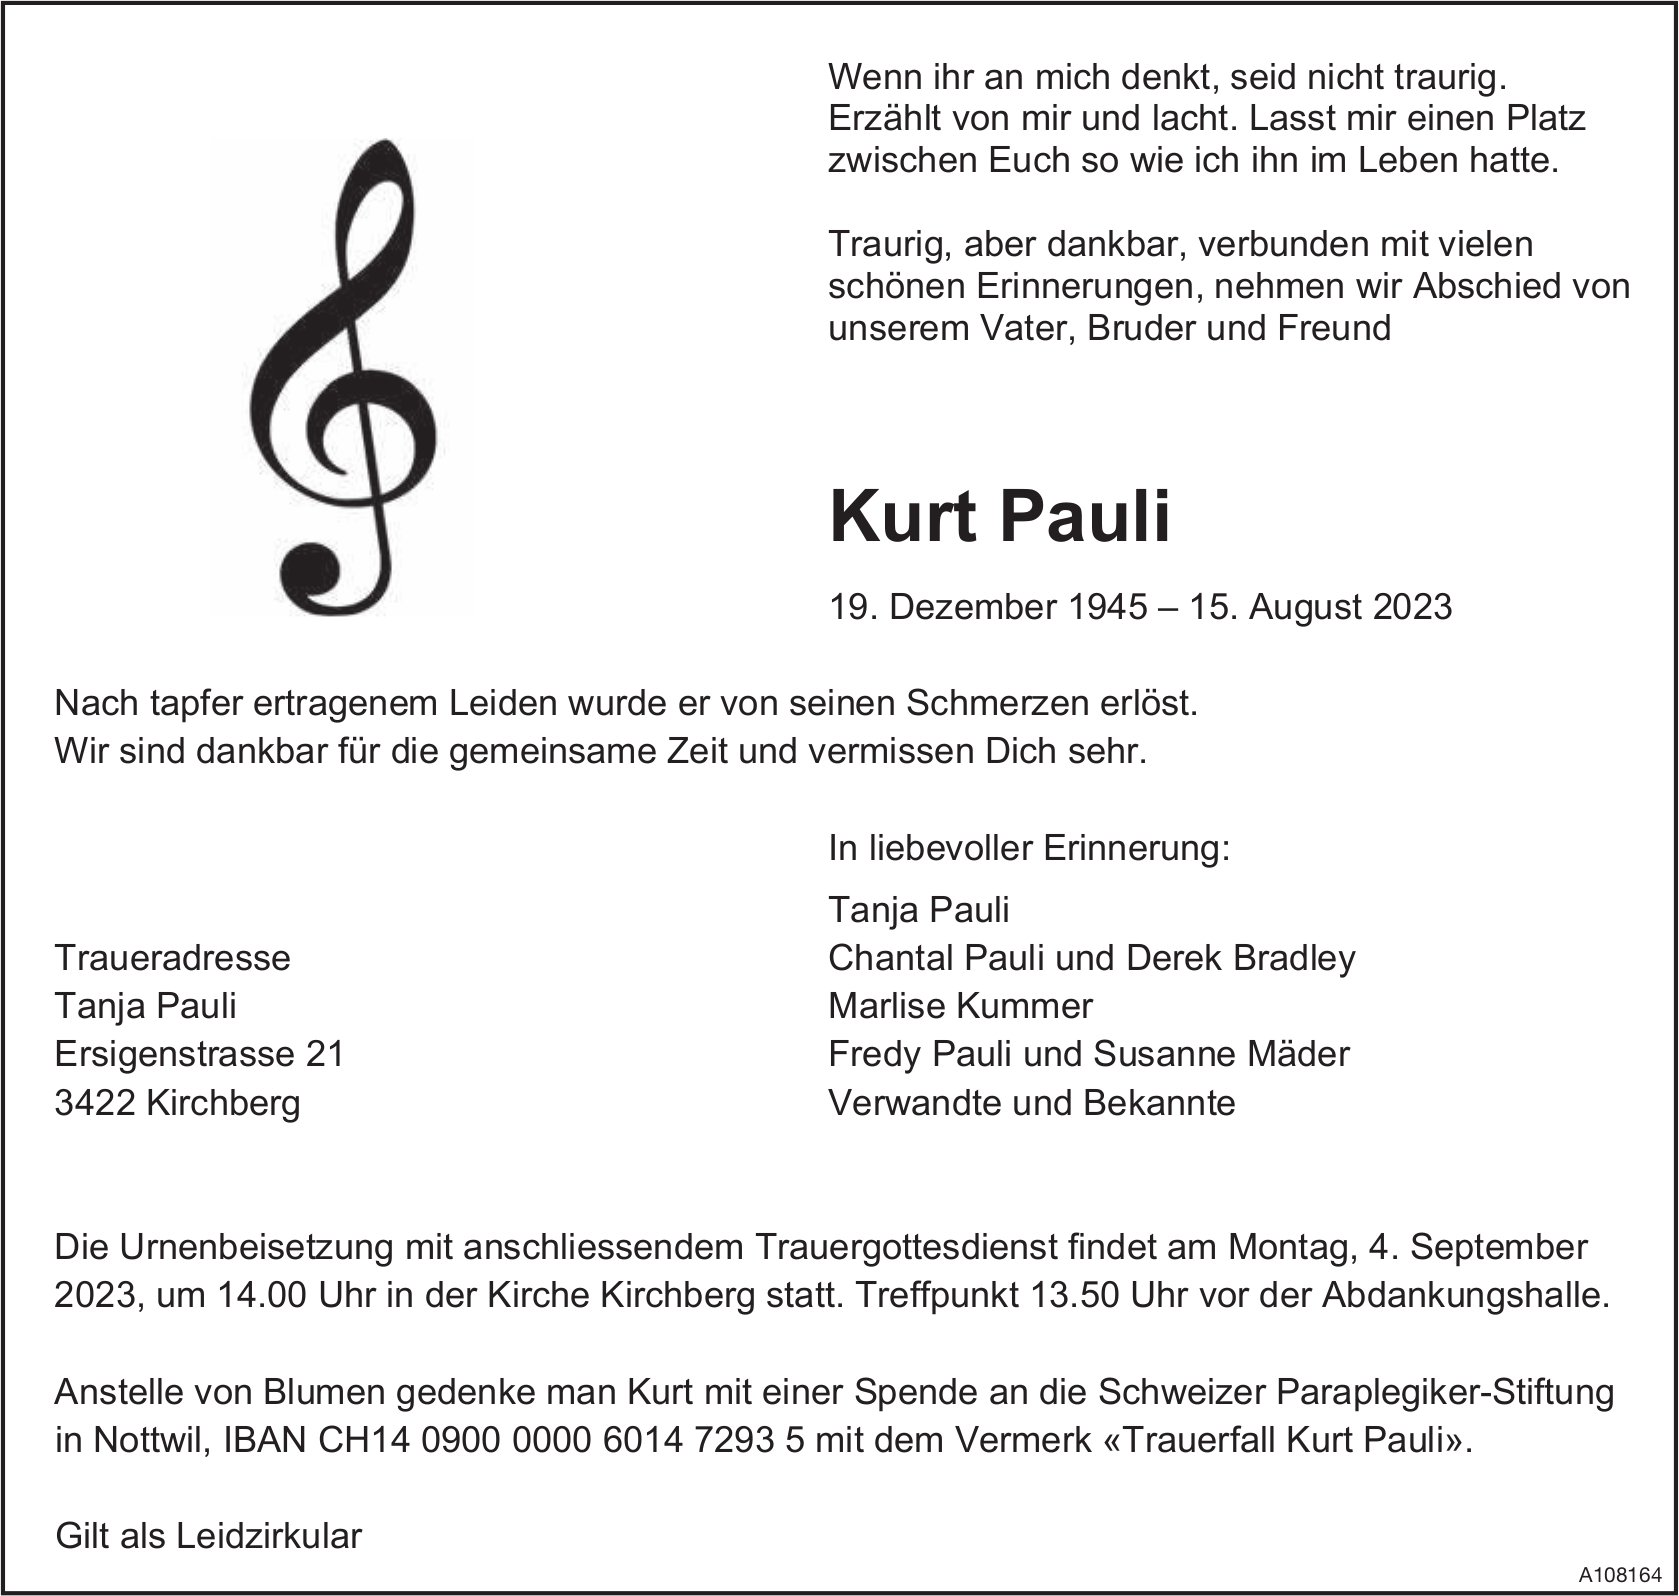 Kurt Pauli, August 2023 / TA